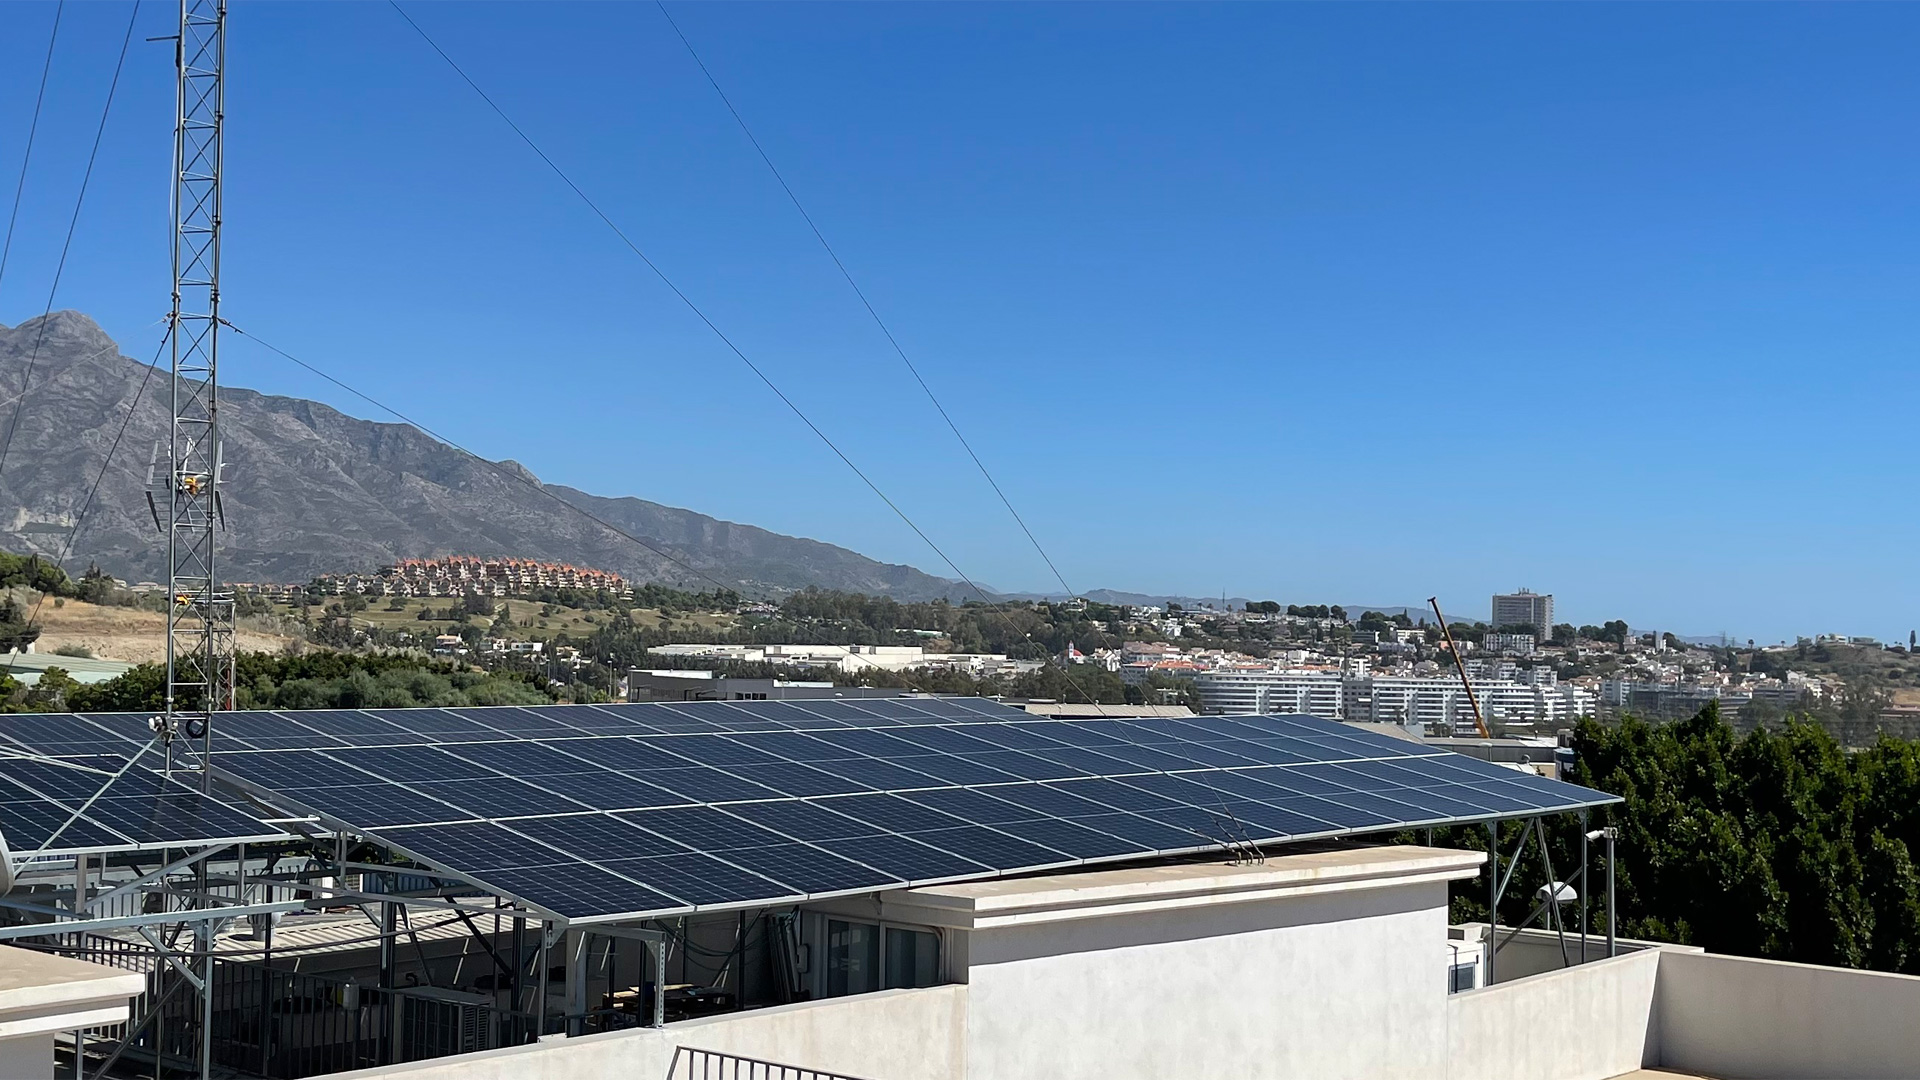 Instalación fotovoltaica para autoconsumo industrial montada sobre cubierta plana